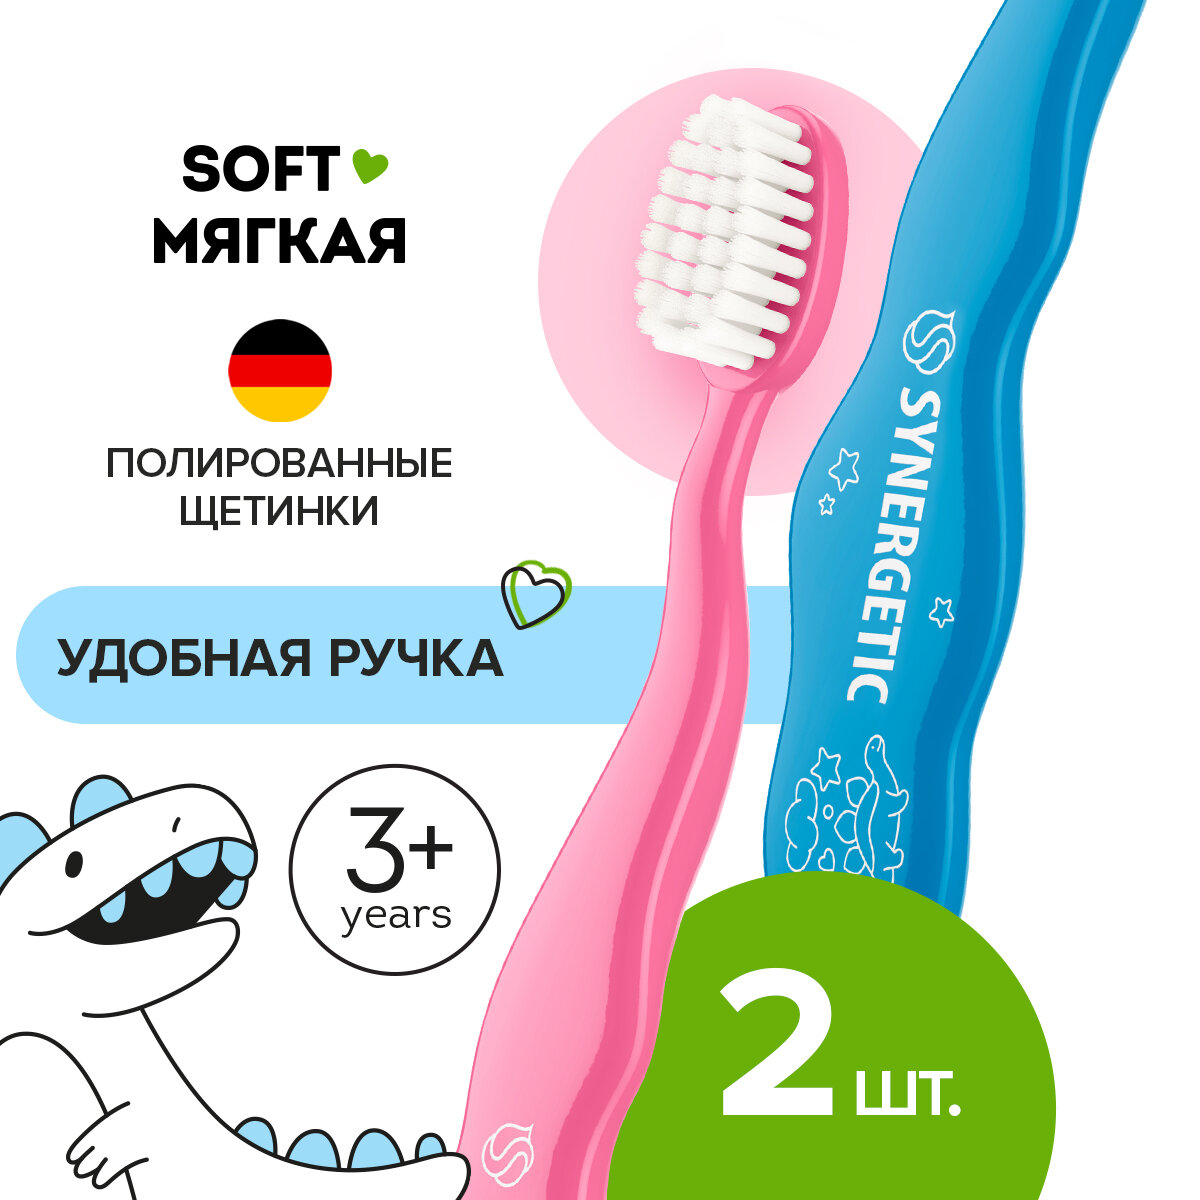 Набор Зубная щетка для детей от 3 до 6 лет, мягкая (голубая и розовая), набор, 2 шт.